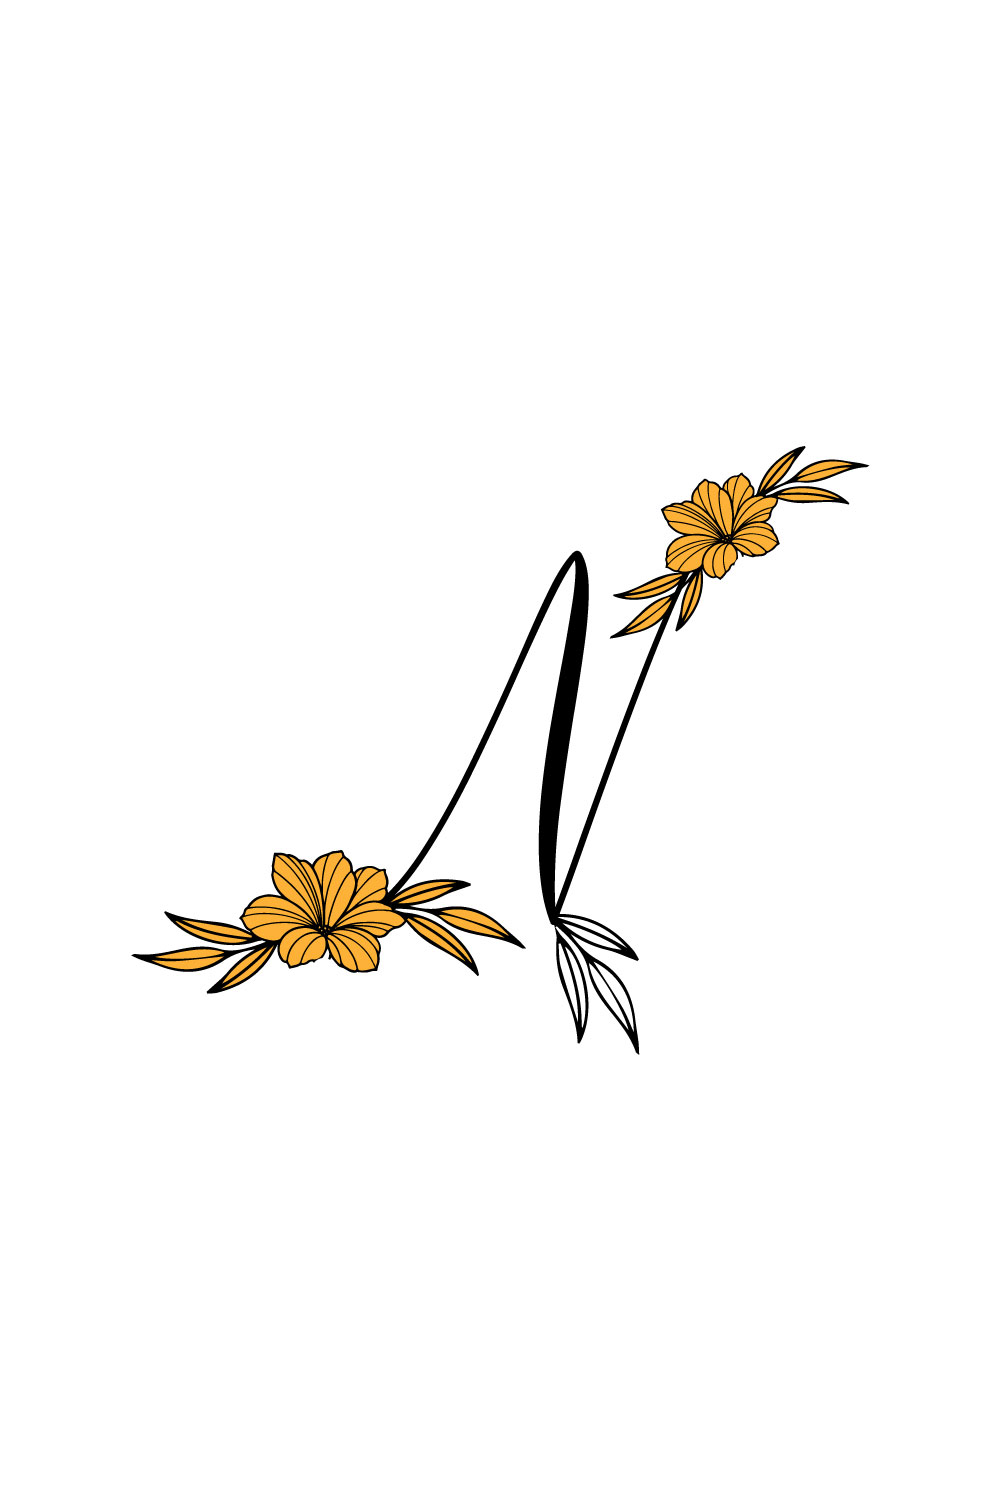 Free N Letter Wedding Flower Logo pinterest preview image.